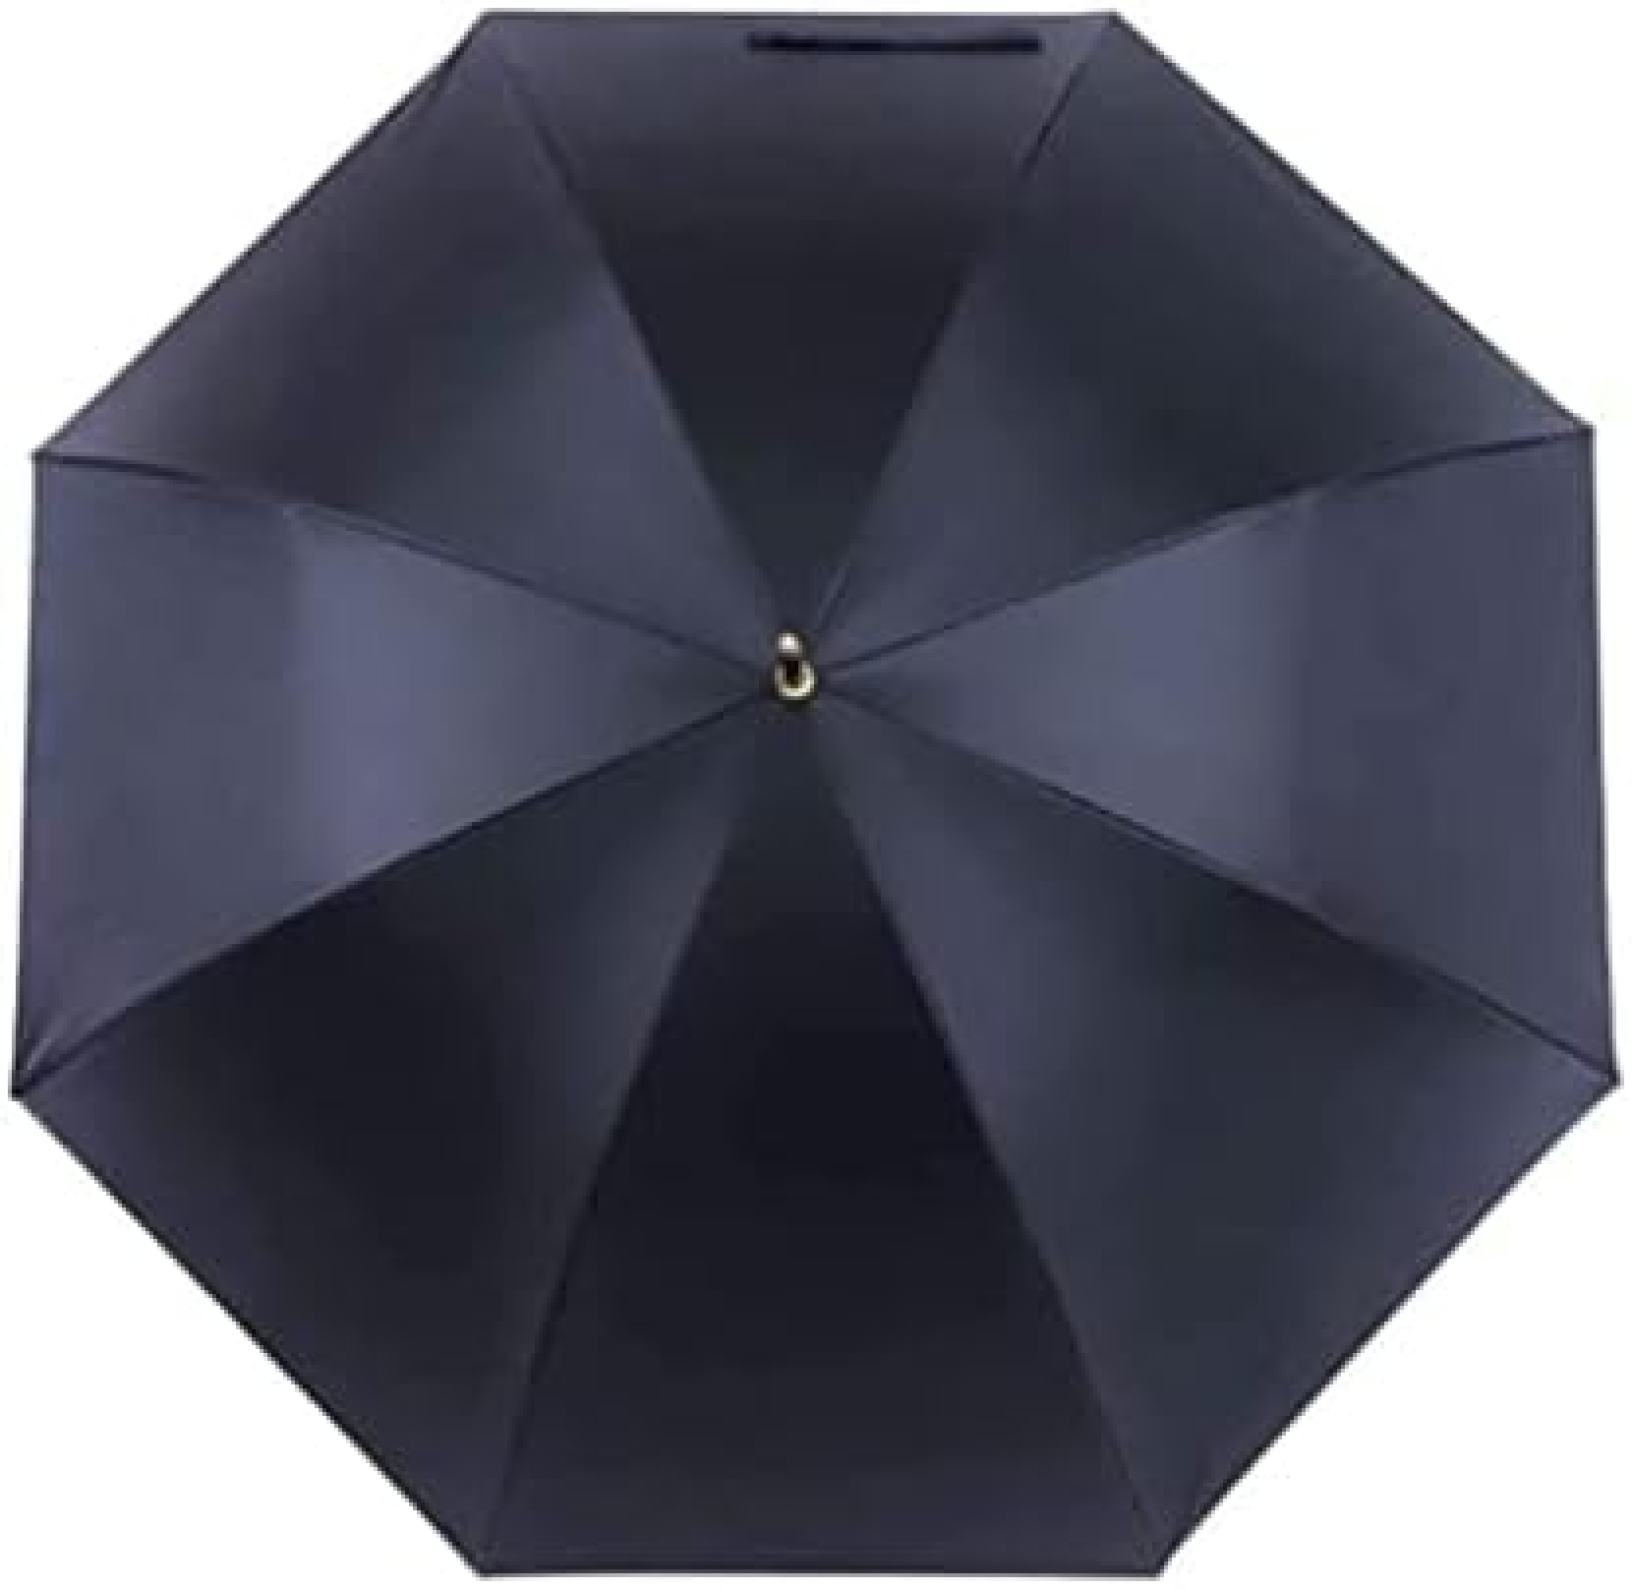 　　　 ◆◇◆売れている秘密◆◇◆ この傘は折りたたみが簡単で、旅行やビジネス、キャンプや釣り、そして日常使いに最適です。男性でも女性でも使いやすいデザインです。 半自動のエレガントなデザインで、1回の操作でスムーズに開閉できます。傘を開いたときの美しさと実用性を兼ね備えています。 蓮の葉の効果により、1回のストロークで傘が乾燥します。高密度の衝撃布が使用され、大きな雨滴をロータスの葉のように扱います。 斬新でファッショナブルな傘の帽子は、金と黒のデザインを取り入れ、風や雨からしっかりとあなたを保護します。大型のキャノピーには通気口が設けられ、正確なサイズで自然の要素から守ります。 柔らかなカラーリングと上品なデザインの組み合わせは、どんなスタイルにもマッチし、優雅で実用的なアイテムとなること間違いありません。 　　　◆◇◆注意事項◆◇◆ご覧のモニターの環境、撮影環境により実物と色味が異なって見える場合がございます。湿った状態で他のものと擦り合わせると色が移る恐れがあります。濃色品の洗濯時は、白色、淡色と分けて洗ってください。説明 耐風・防水・軽量・遮光・レトロデザインの大型キャノピー傘　男女兼用　無地デザイン　防風・防雨・UVカット　自動開閉機能搭載 折りたたみ式傘が旅行やビジネス、アウトドアでの使用に最適。男性も女性も愛用できます。 半自動デザインのエレガントな傘は優雅さと実用性を兼ね備えています。 Lotus Leaf Effectが、1回のストロークですばやく乾燥します。 高密度の衝撃布は雨滴をロータスの葉のように扱い、耐久性を提供します。 風と雨から保護する、ファッショナブルかつ実用的なデザインのキャノピーは、風通しを考慮した設計で快適さを提供します。